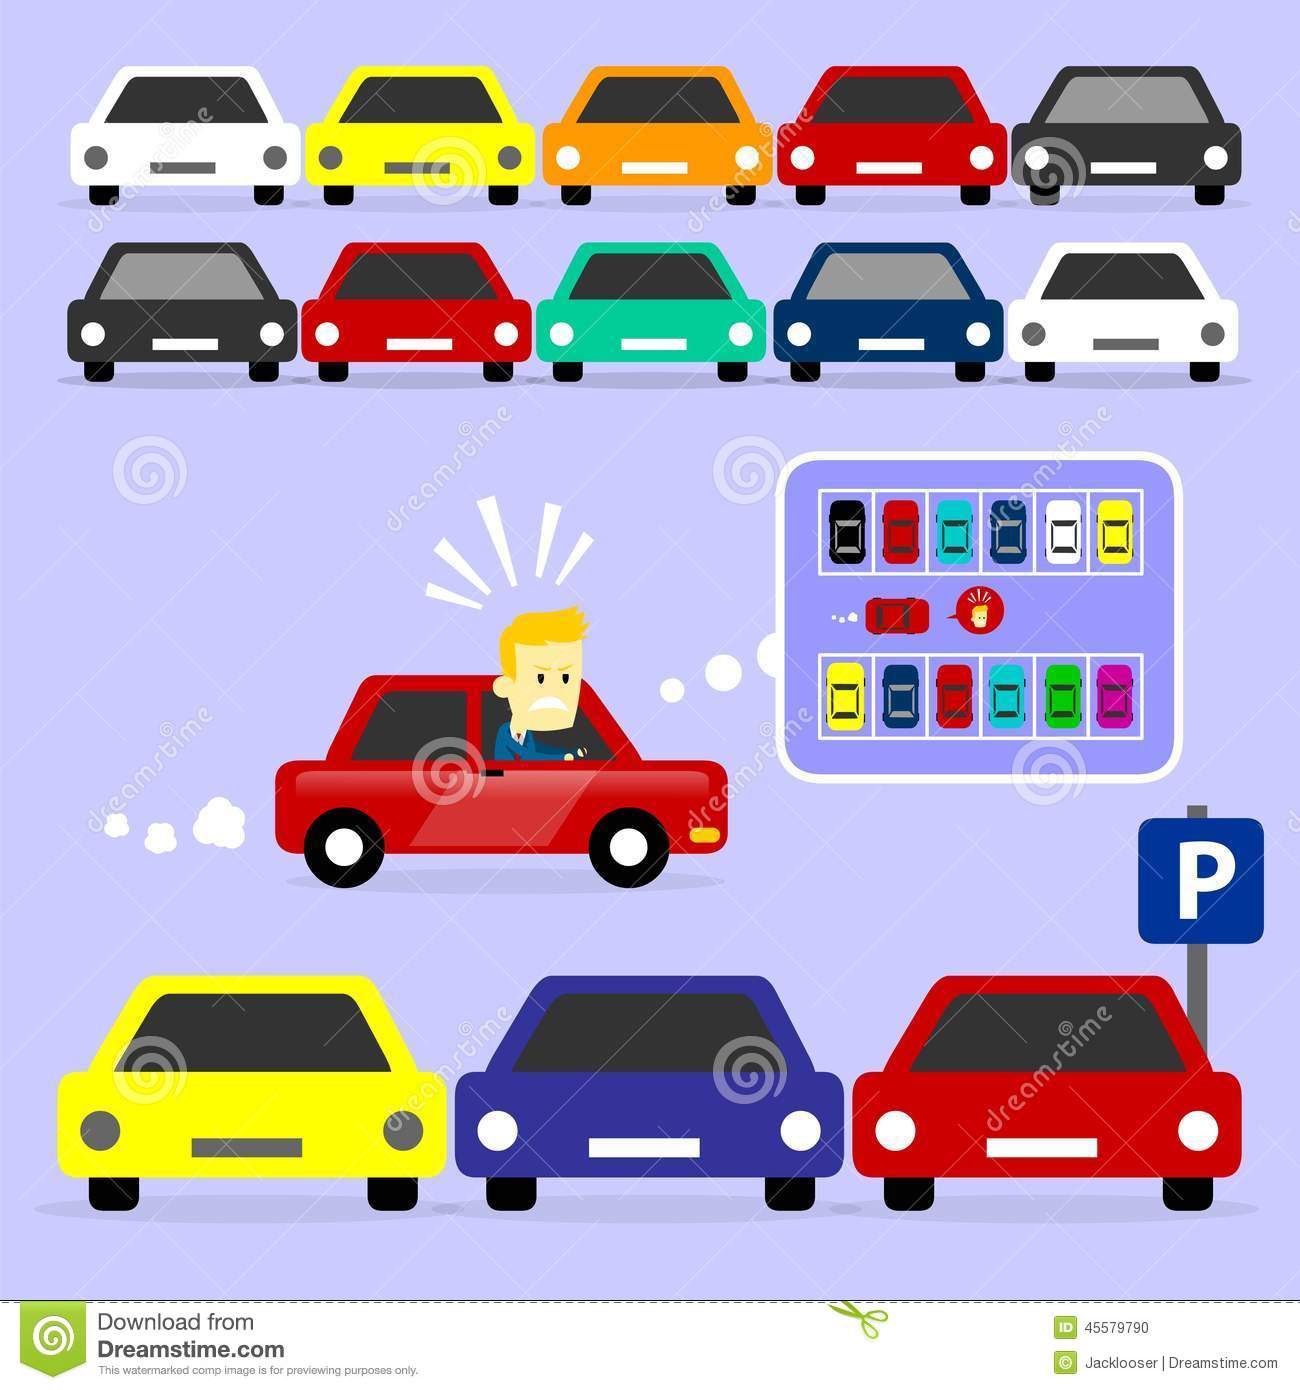 Cars on parking garage. ba574de84e33ac9ec4617905ef209e .